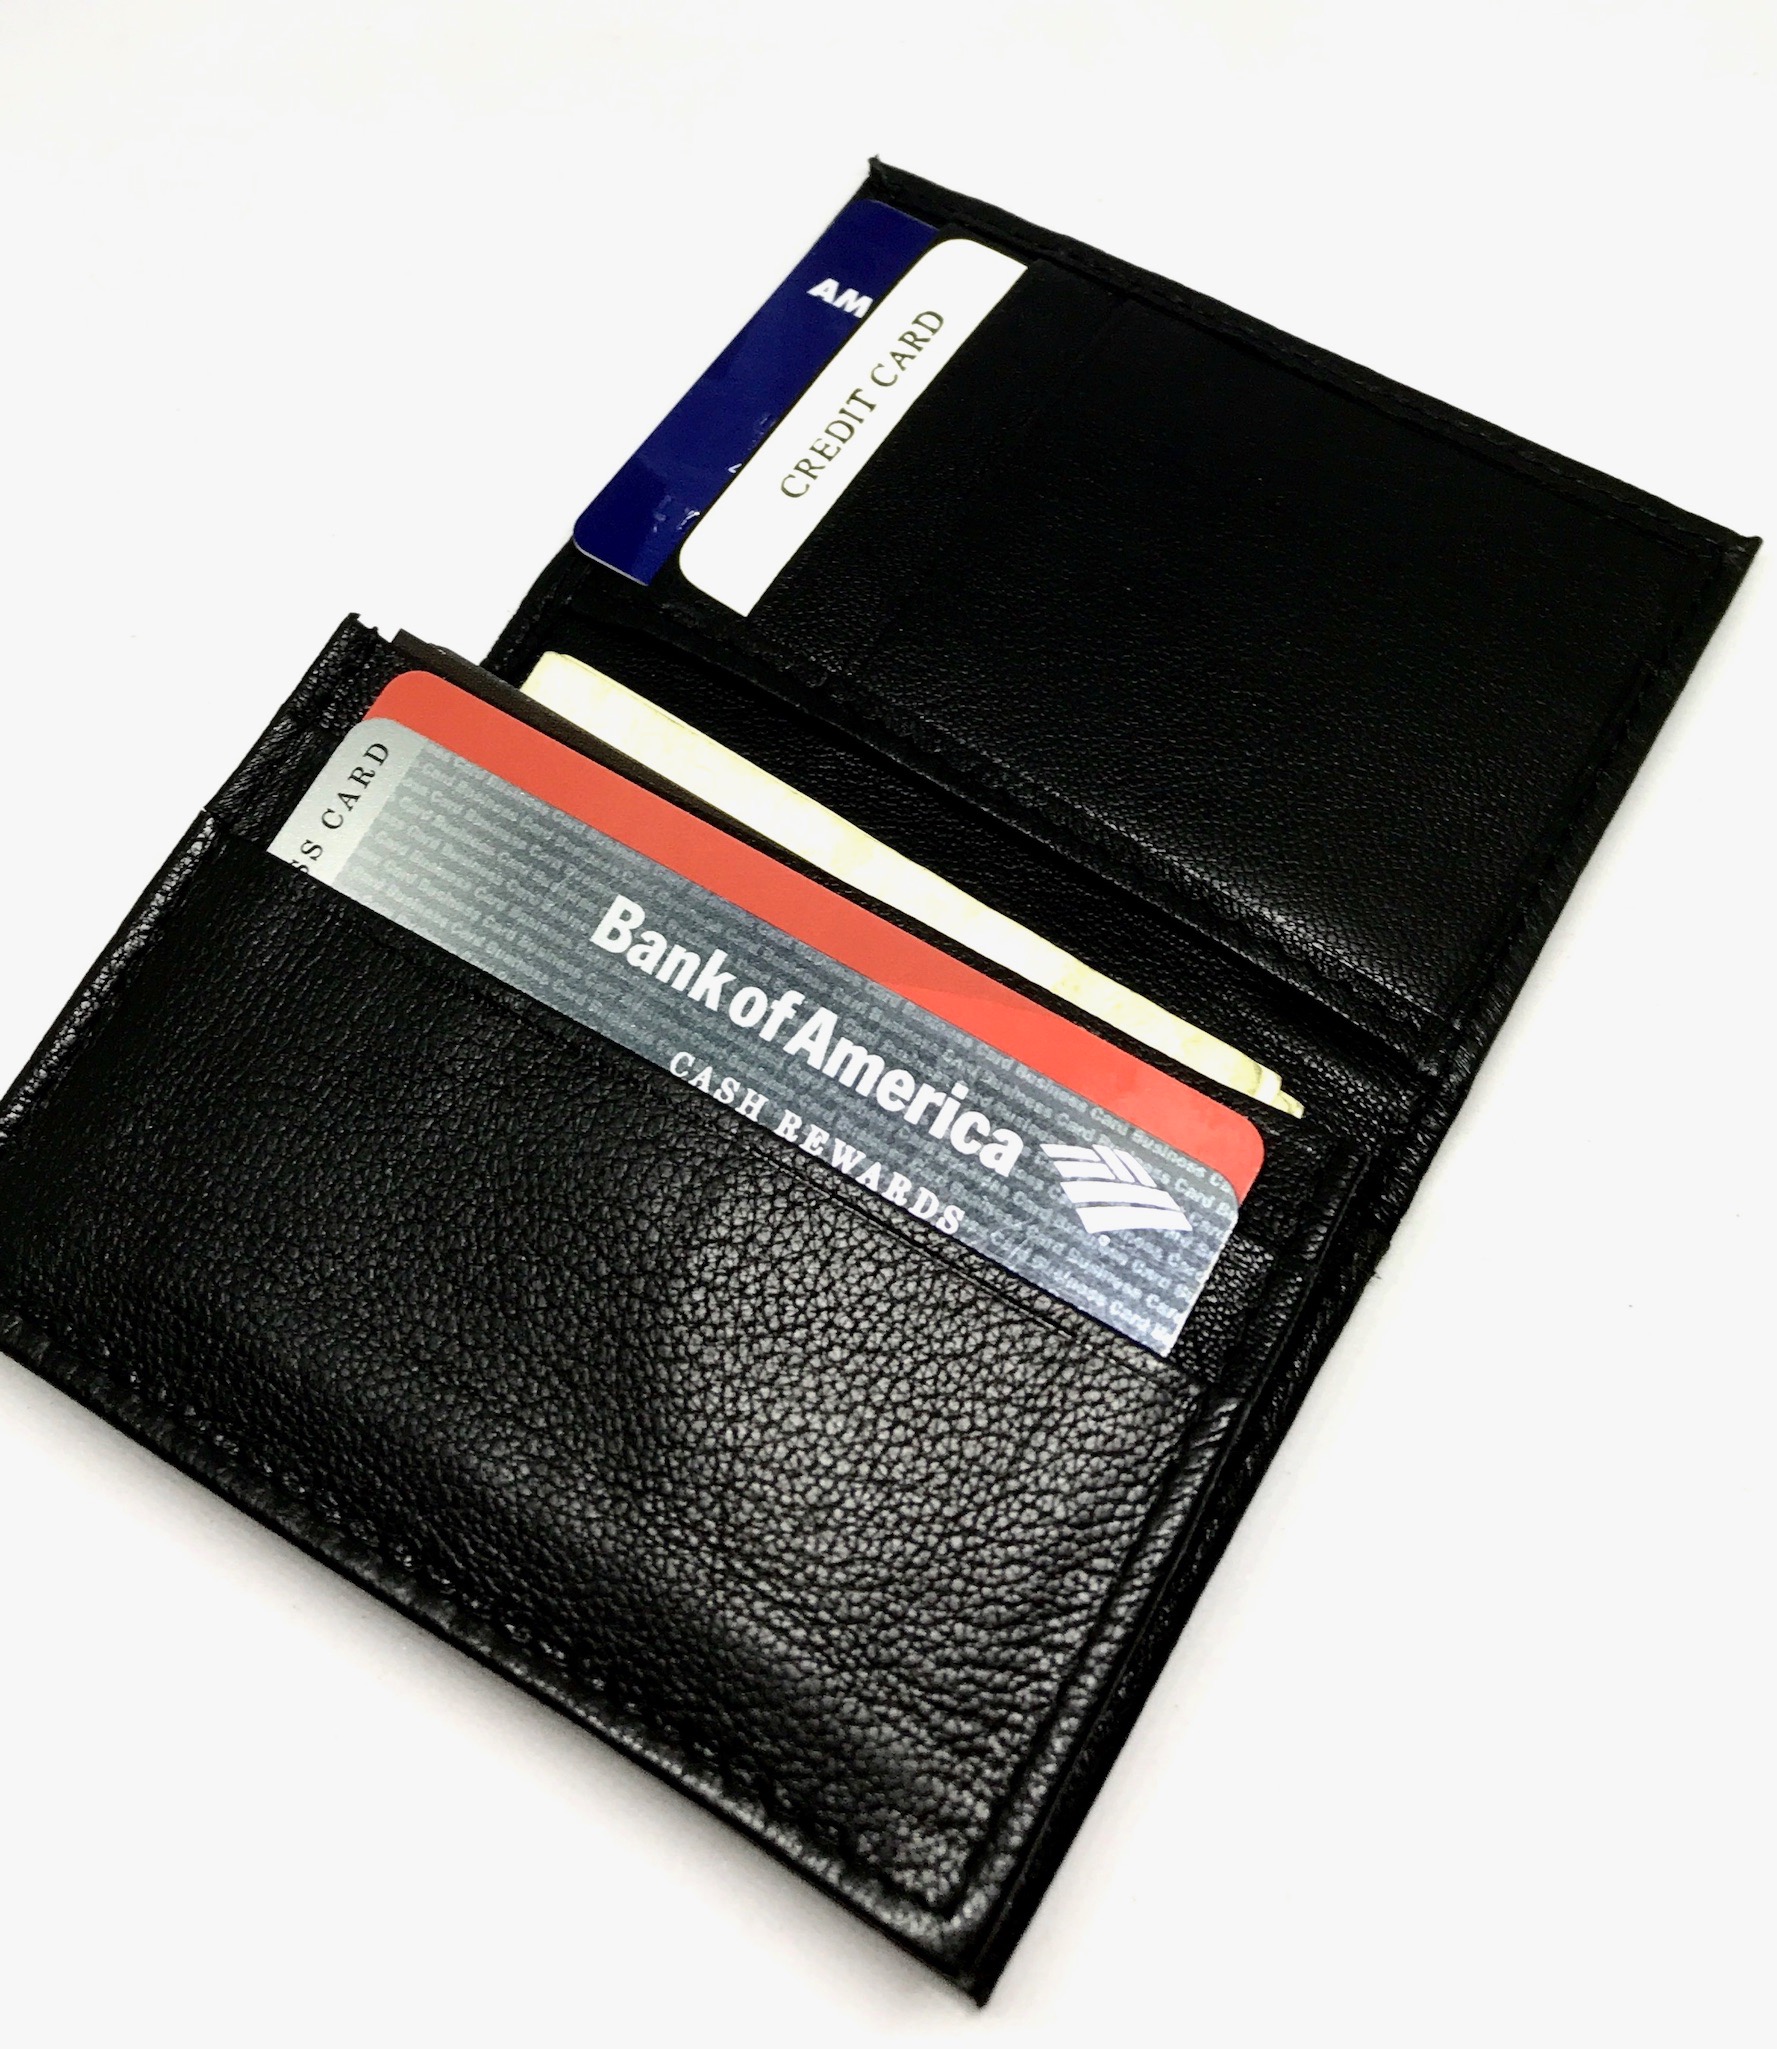 Men's Credit Card Bag Men Fashion Card Holder Wallet Business Card